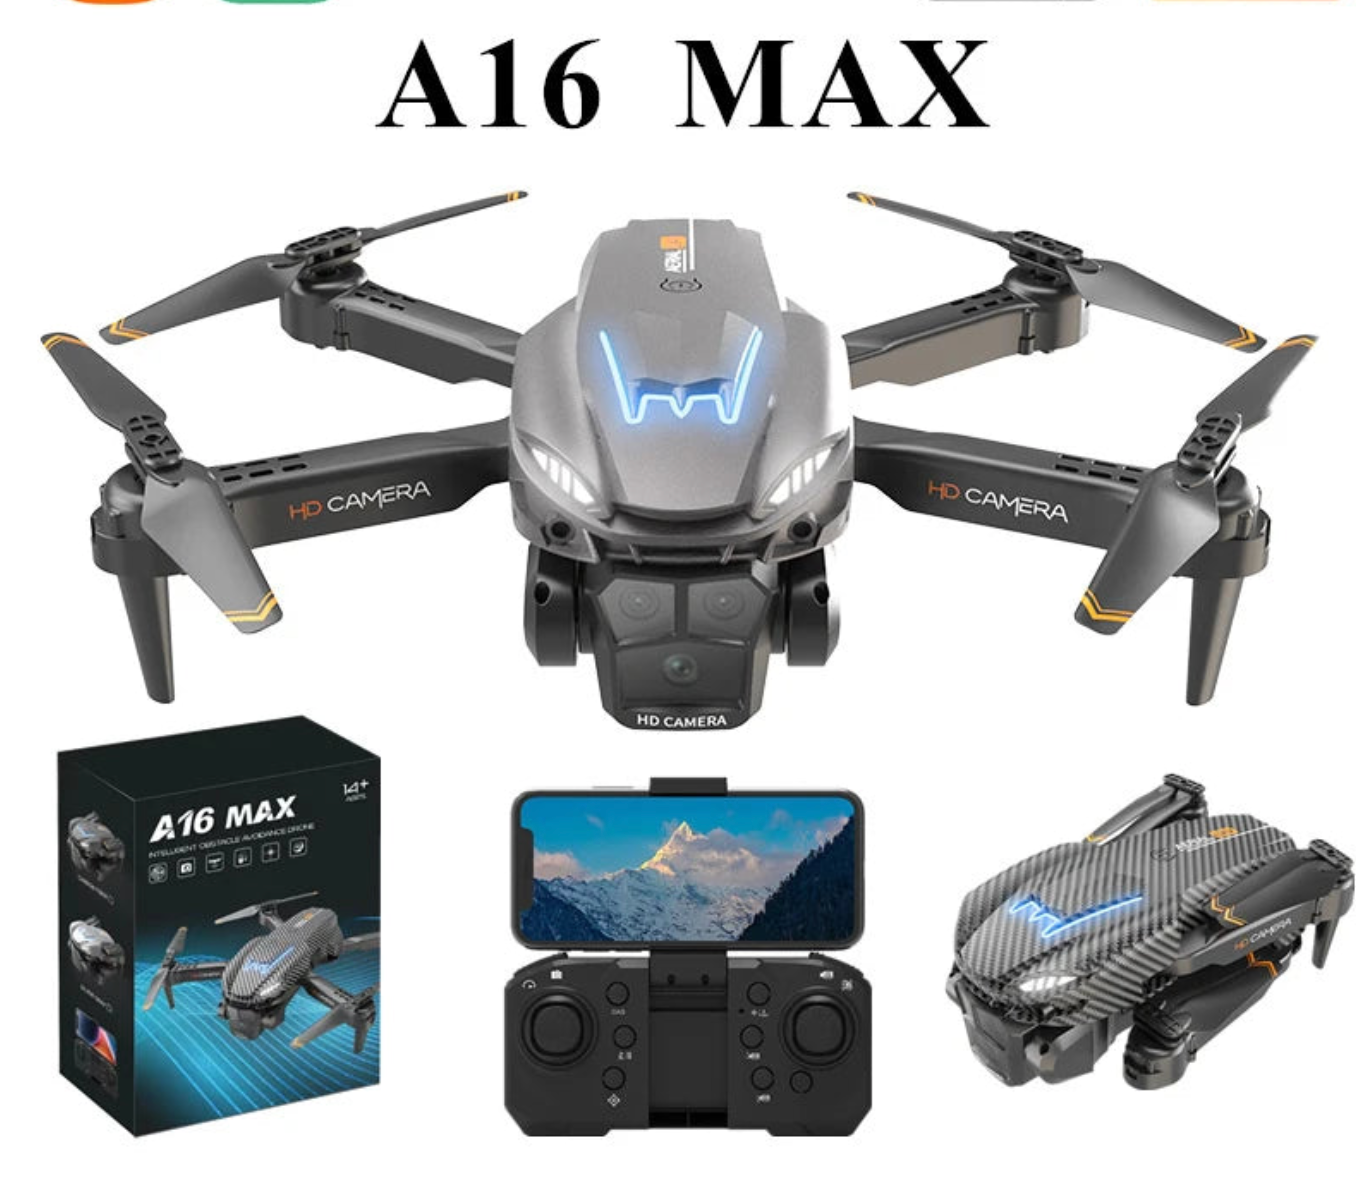 A16 MAX Drone, A16 MAX HDCAMERA Jar CAMERA HD CAM